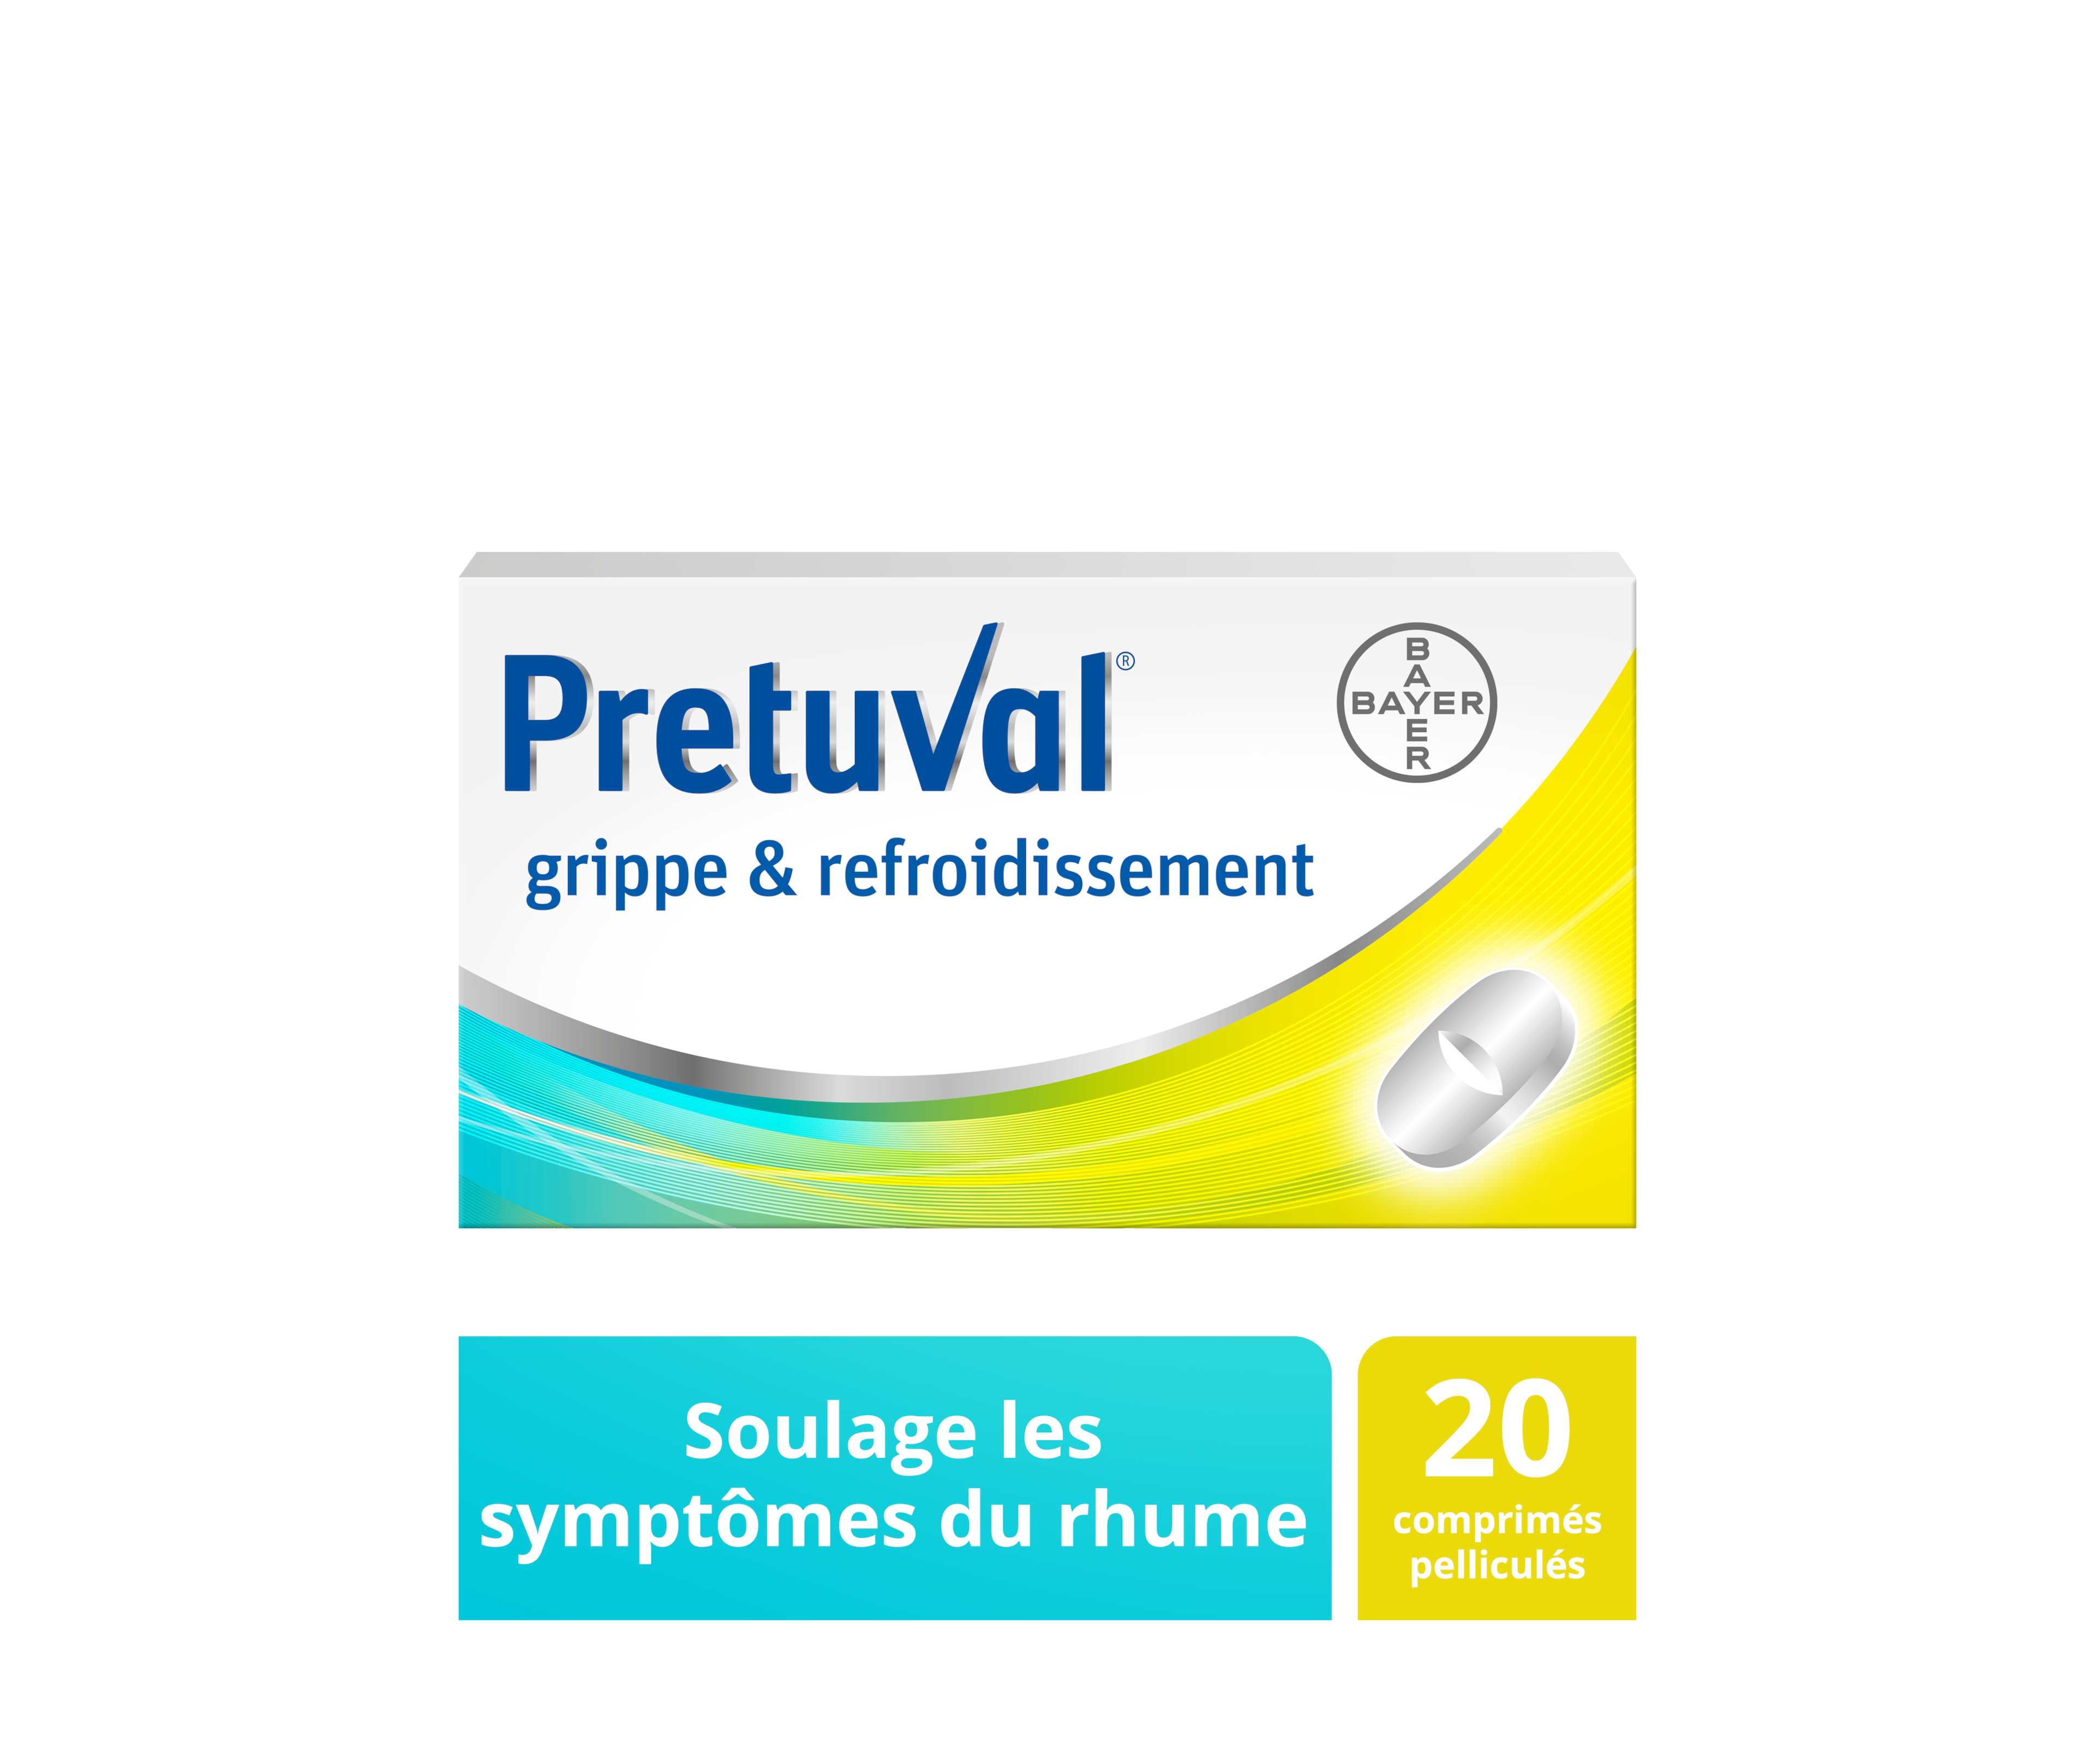 Pretuval® grippe & refroidissement – 20 comprimés pelliculés